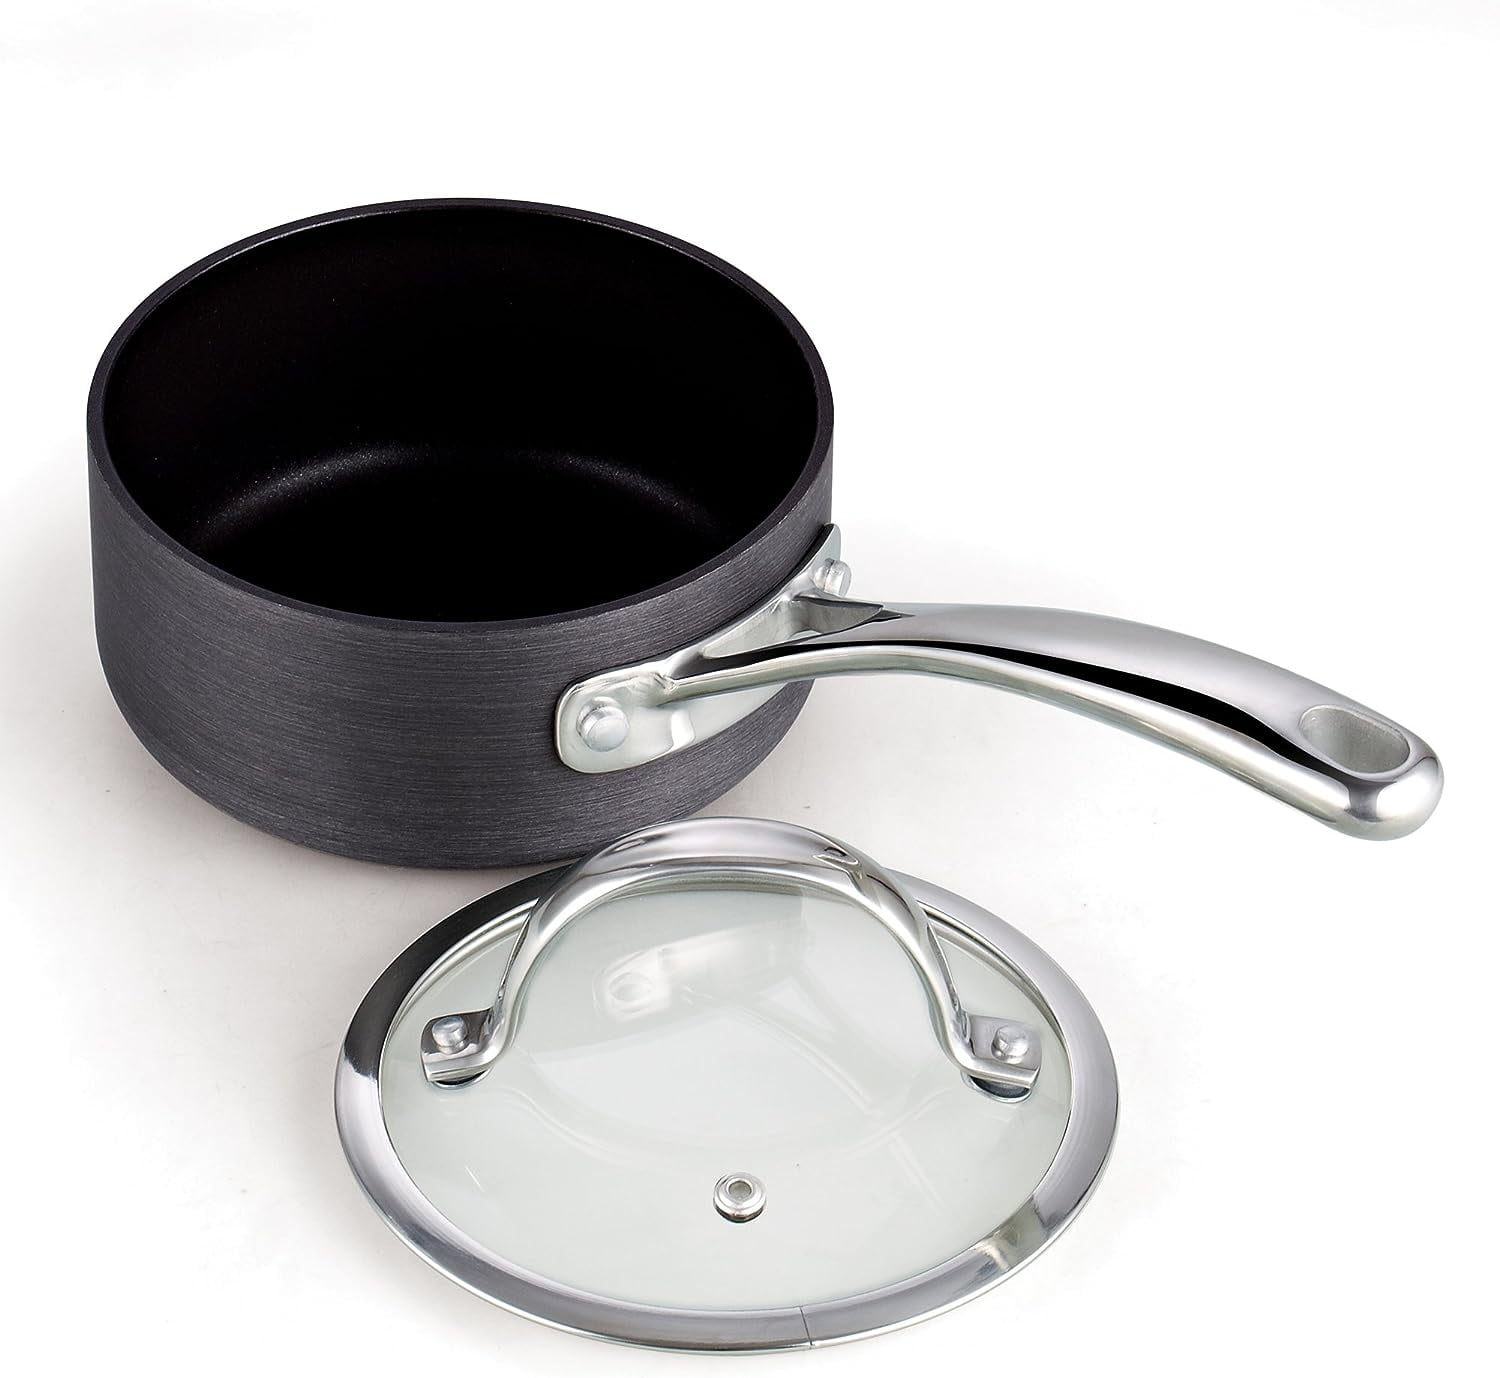 Titanium Nonstick 1.5-Qt Sauce Pan with Tempered Glass Lid – Saflon